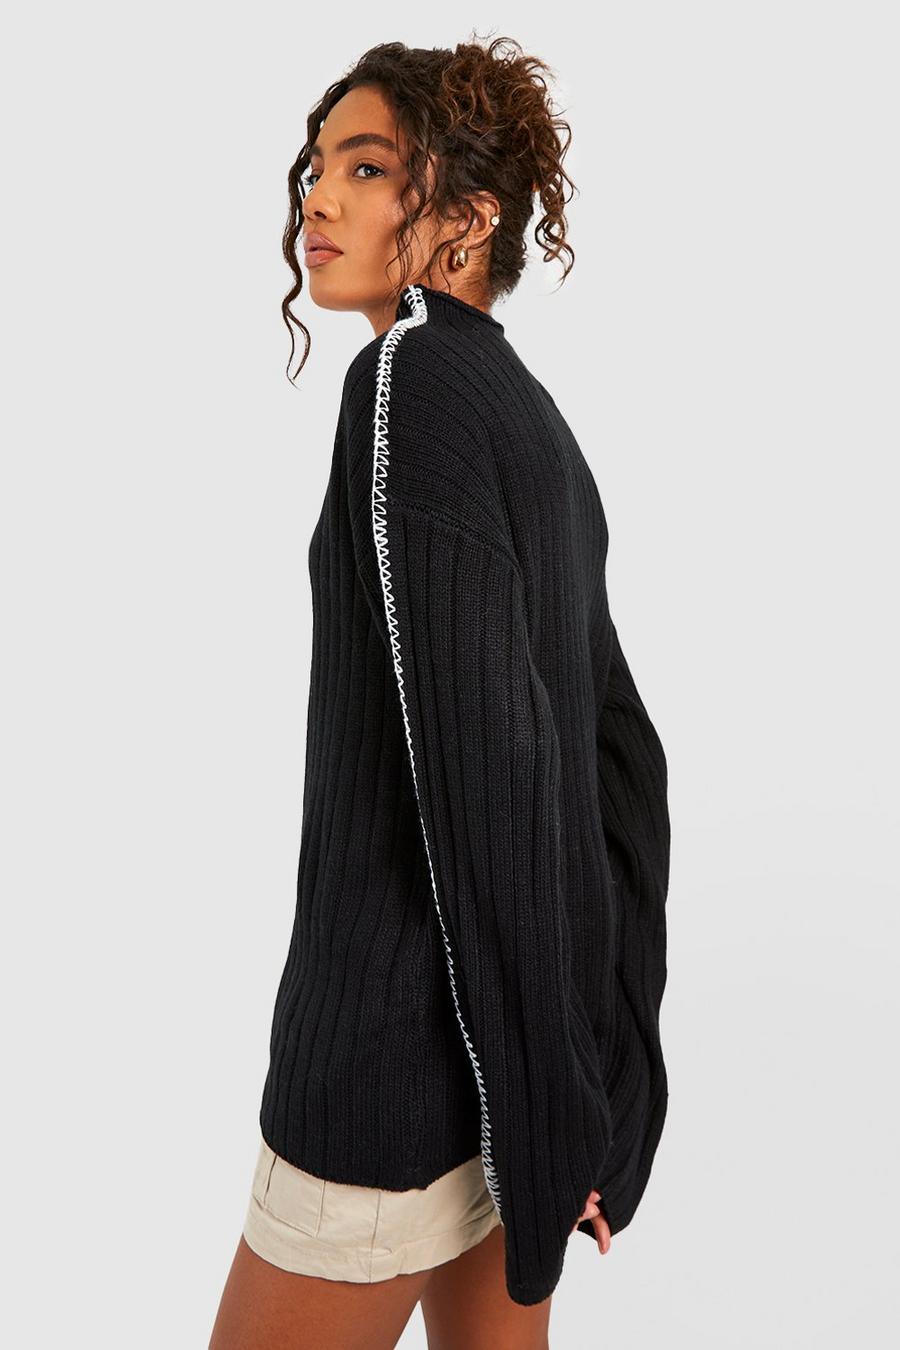 czarny sweter oversize prążki półgolf kontrast